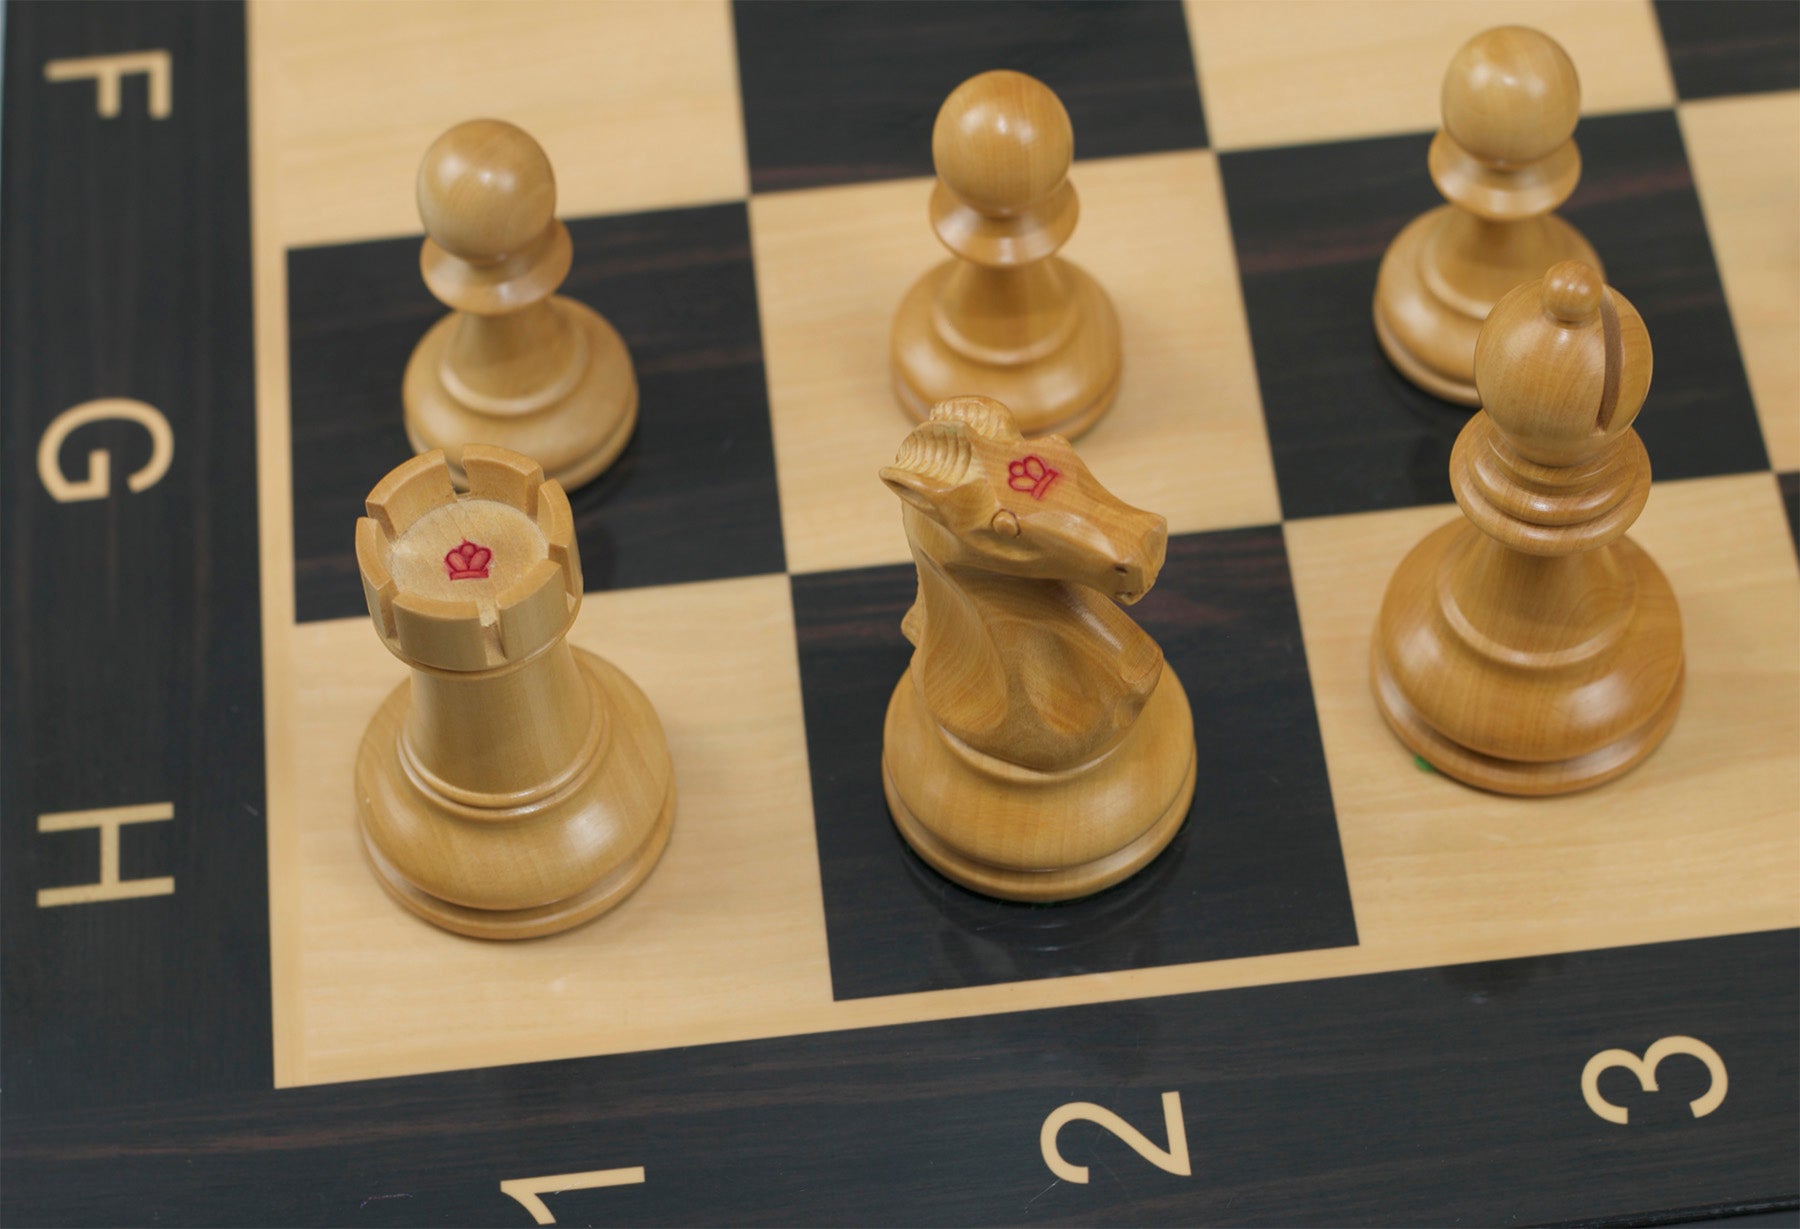 Série Fischer-Spassky (Campeonato Mundial de Xadrez 1972) - Peças de Xadrez  em Madeira de Acácia 3,75 de Índia Boxwood – ROOGU